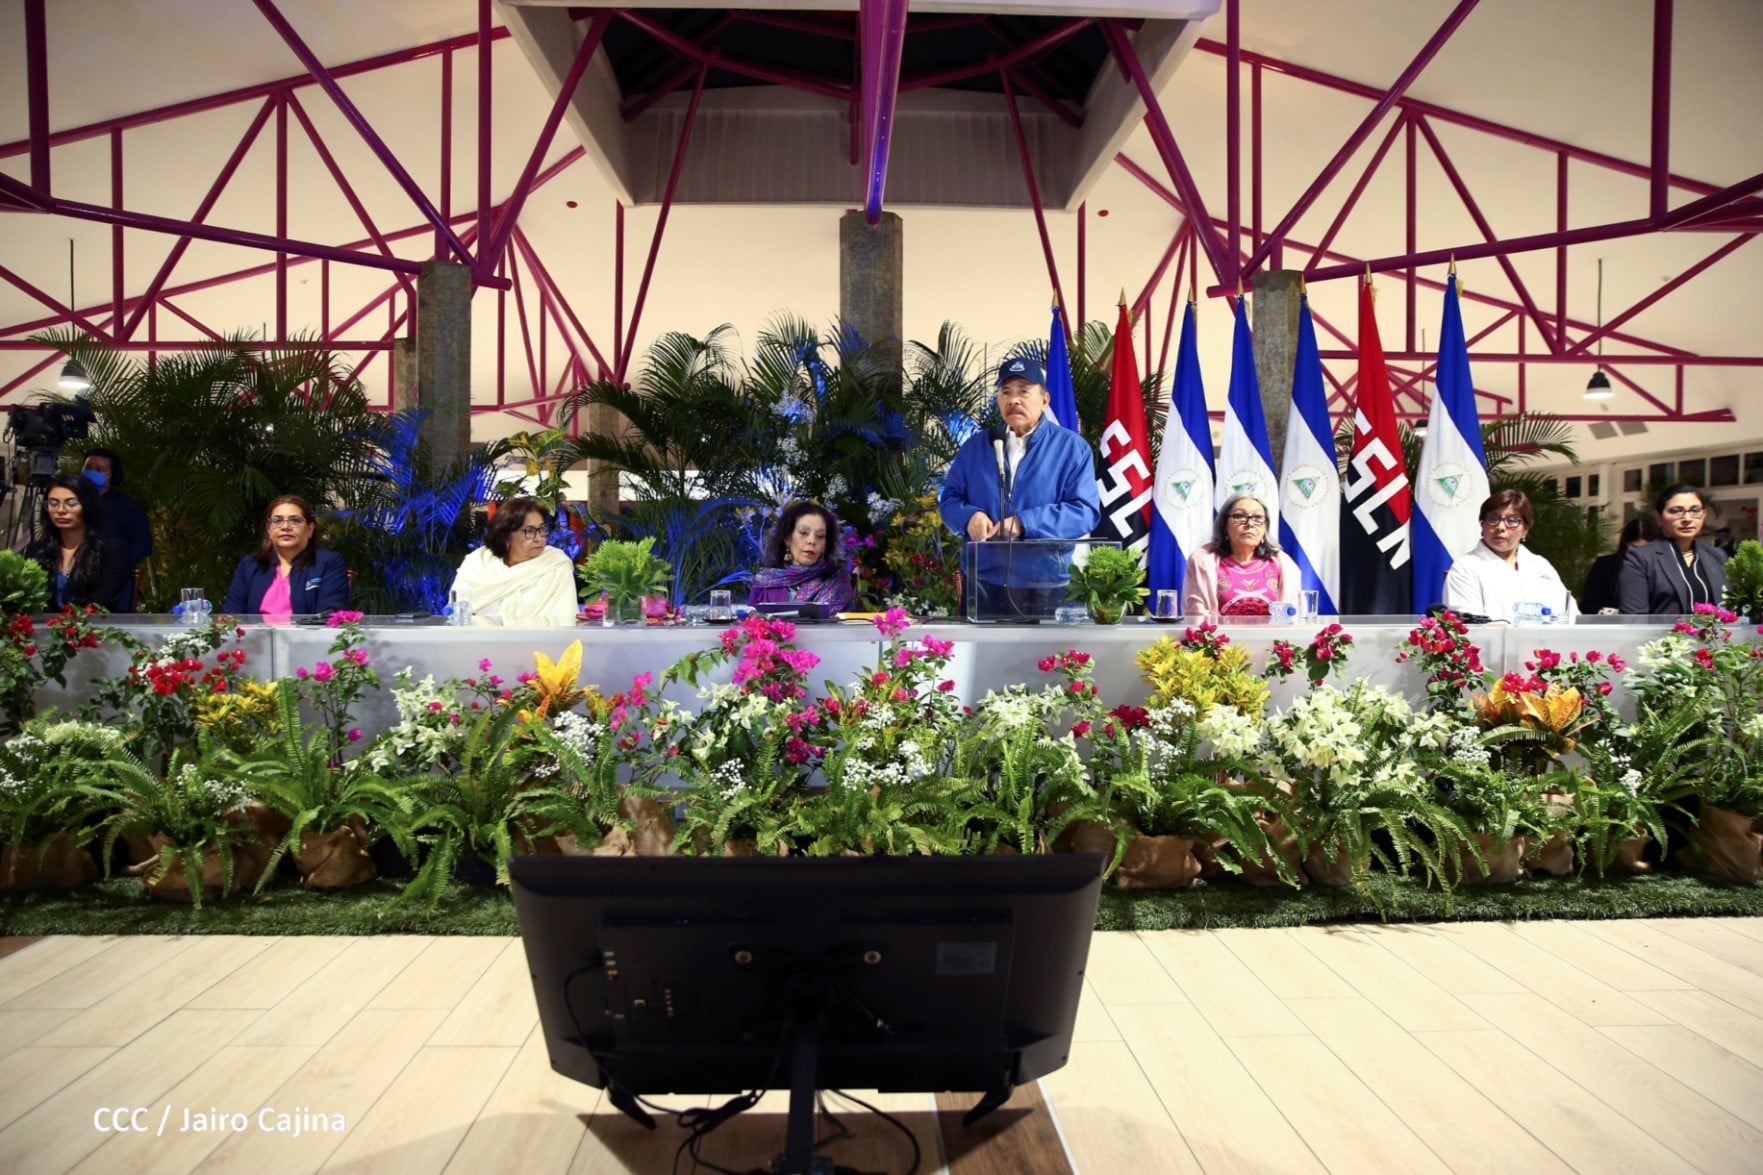 Las promesas electorales recurrentes de Ortega: “mujeres protagonistas”